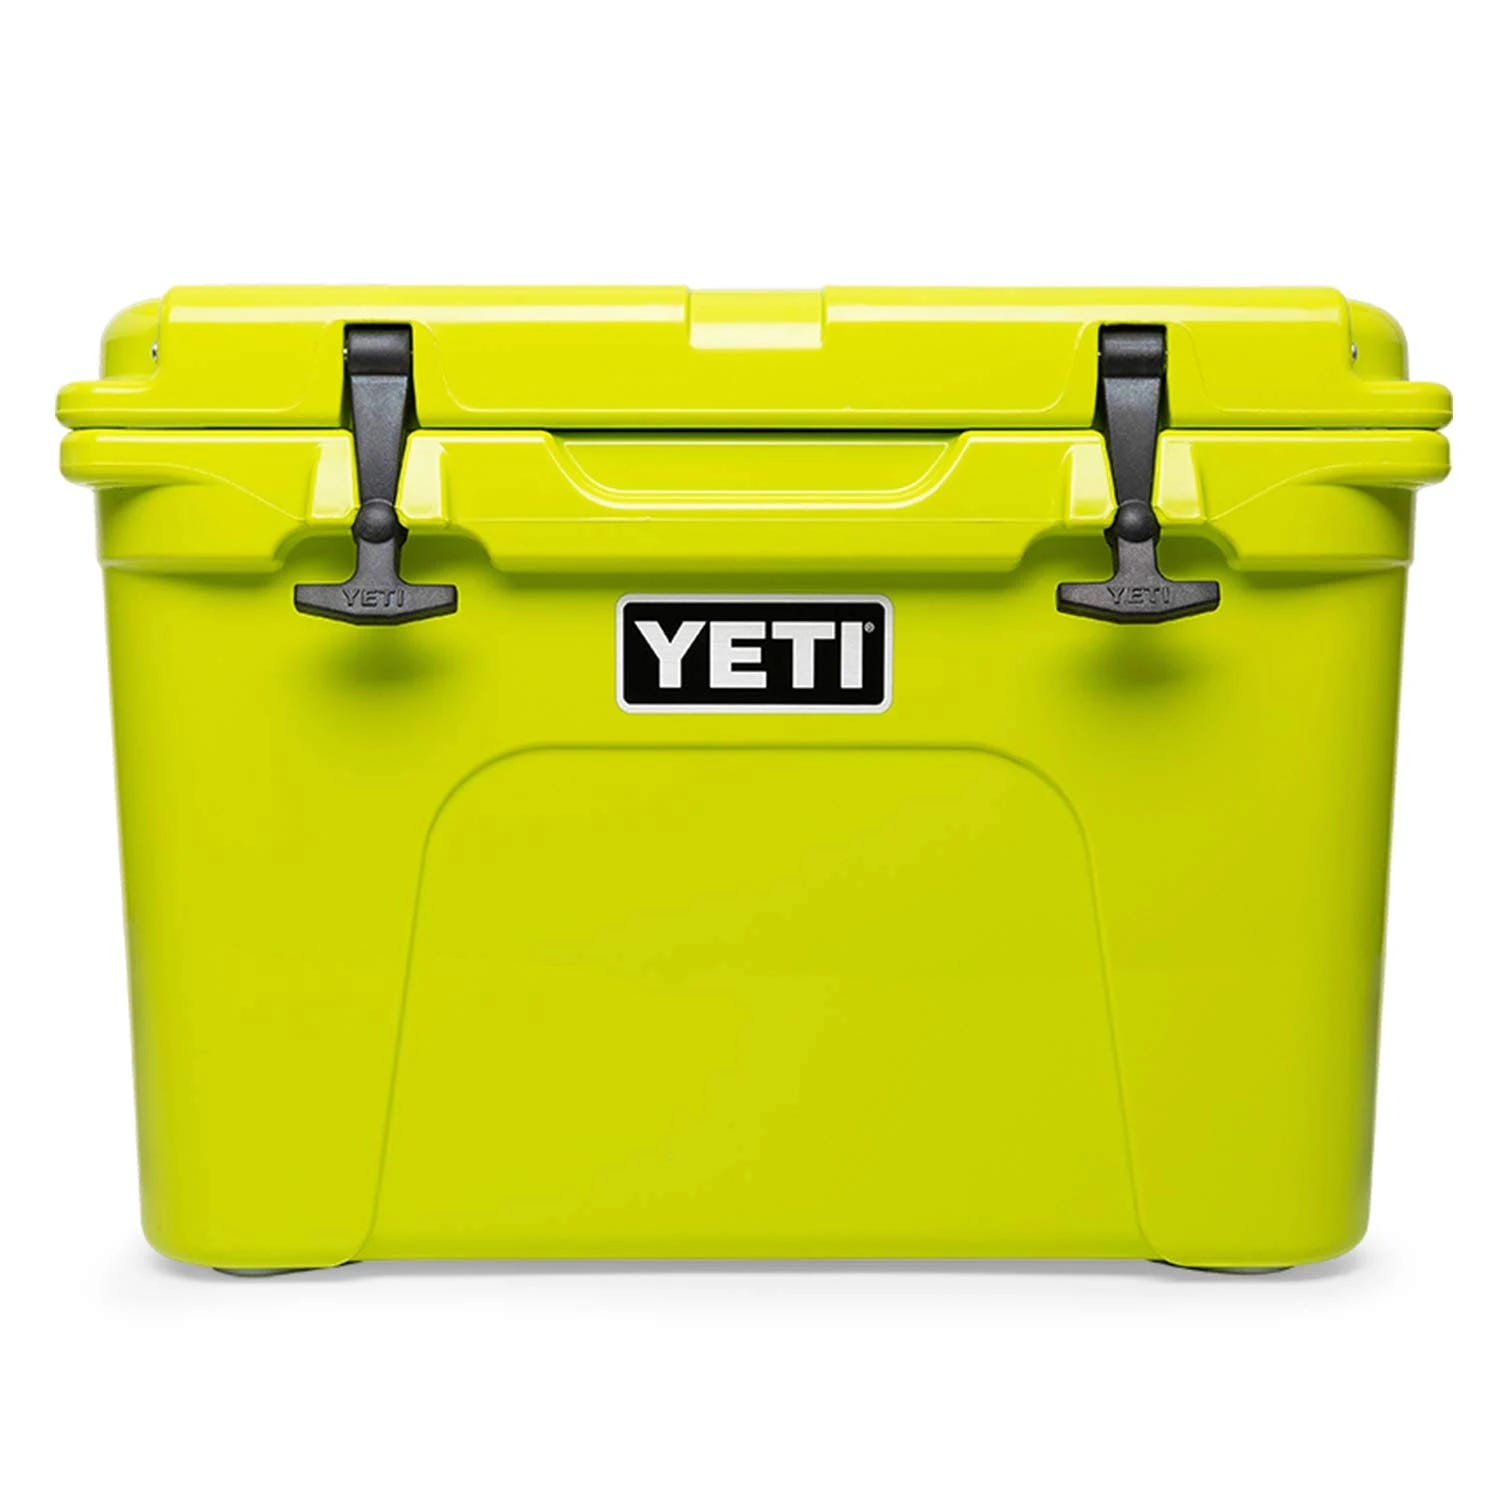 Yeti Tundra 35 Cooler - Durable, Portable Storage | Image